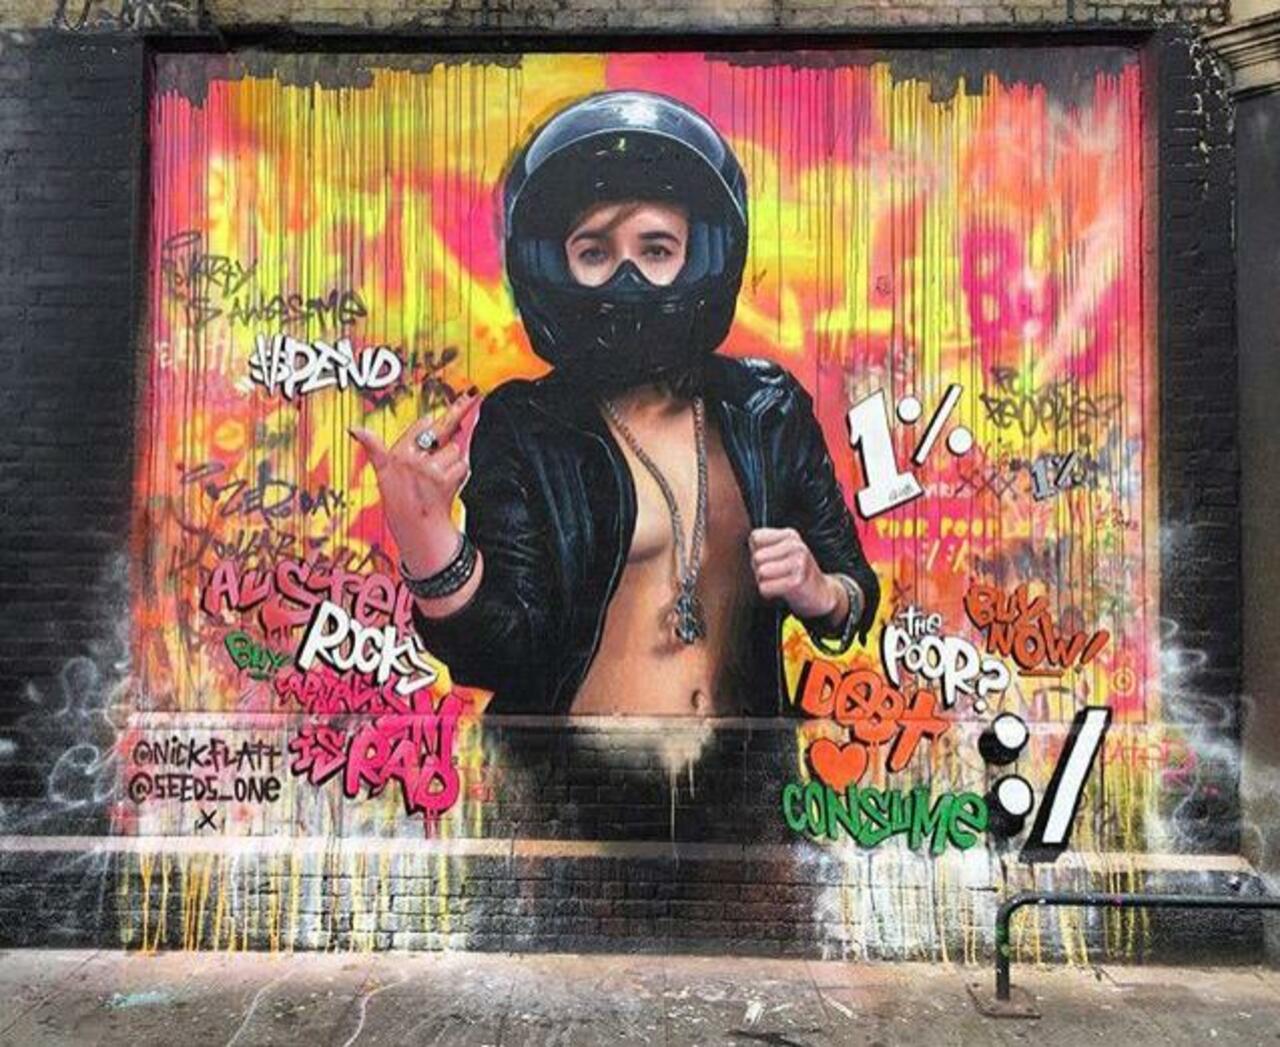 New tumblr post: "New Street Art collab by Nick Flatt &  Seeds One in London 

#art #graffiti #mural #streetart http://t.co/8neF6L6F5W" …